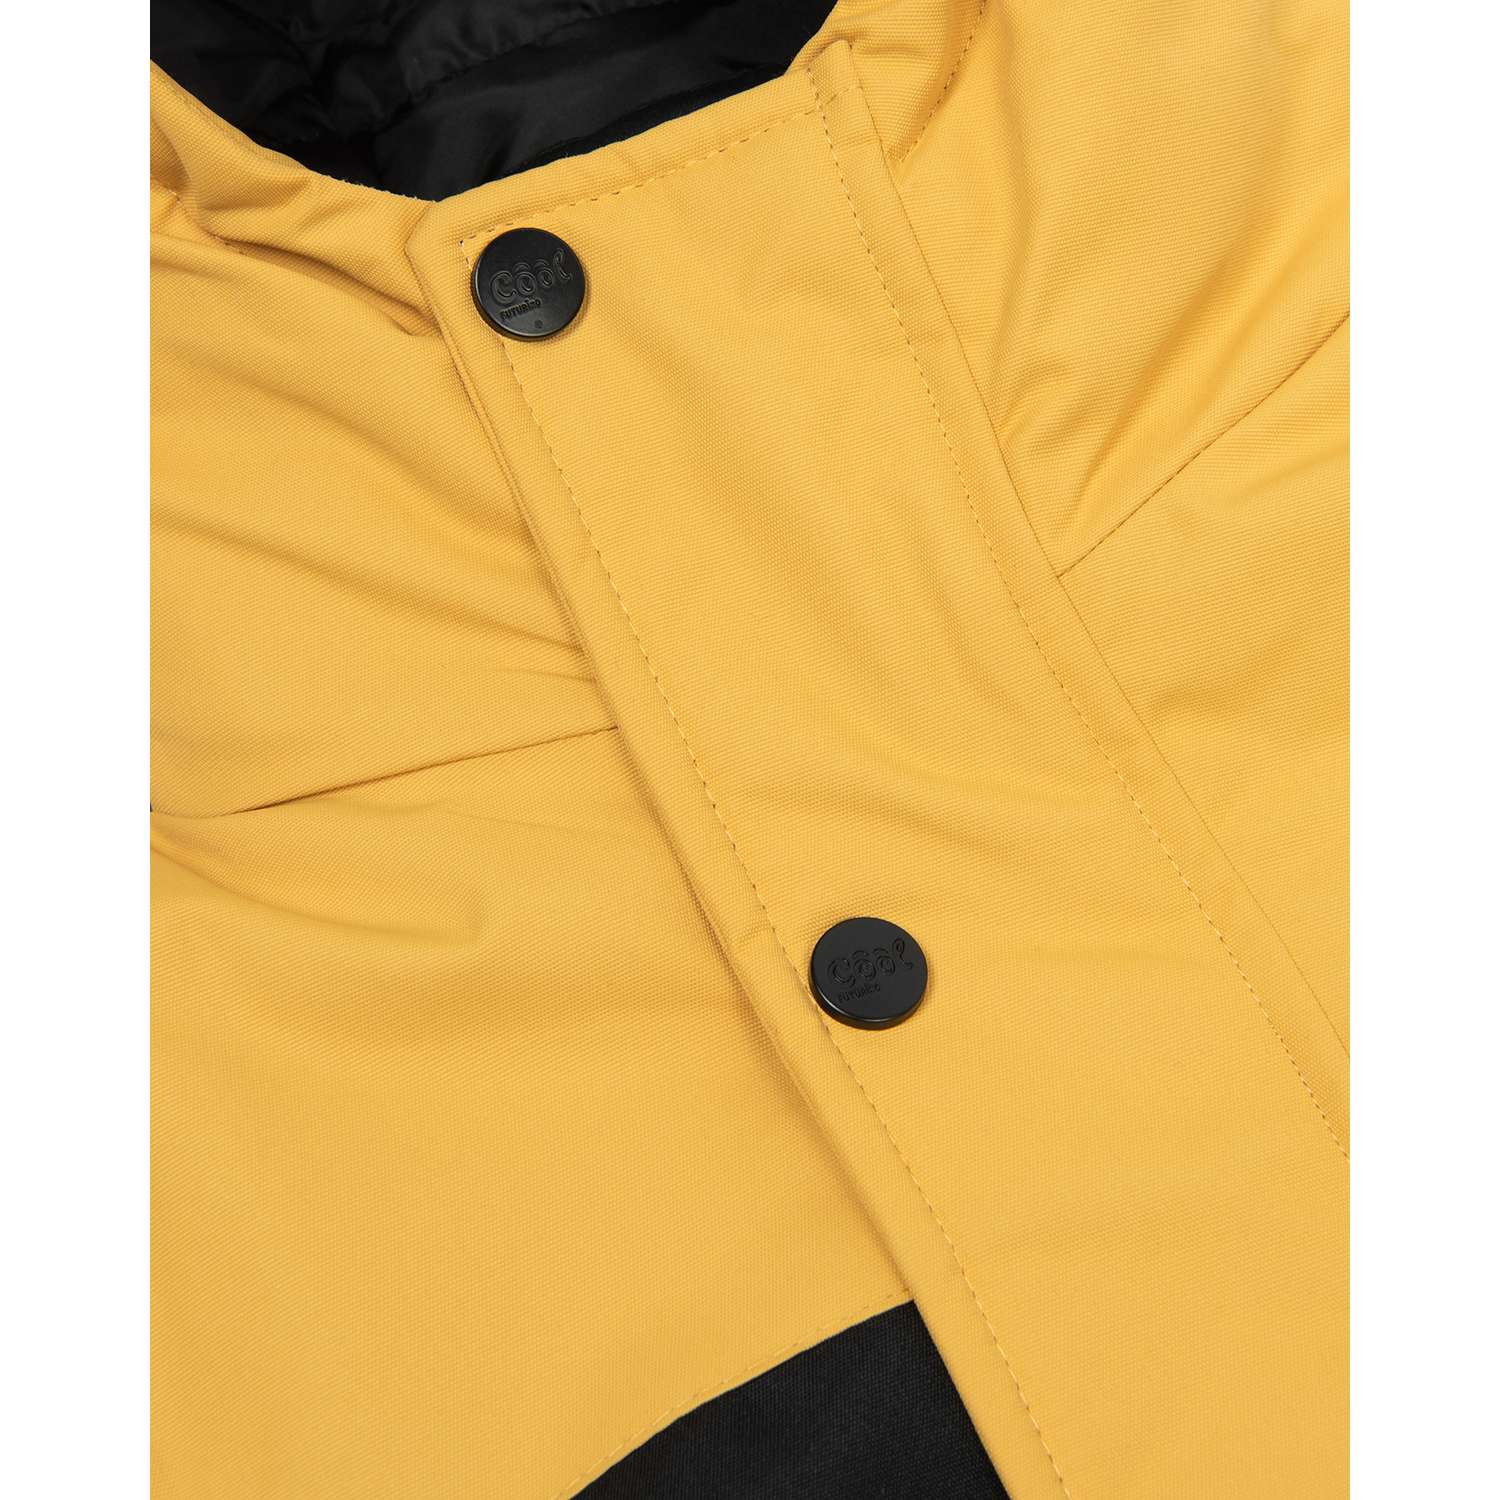 Куртка Futurino Cool W22FC5-B46tb-33 - фото 5